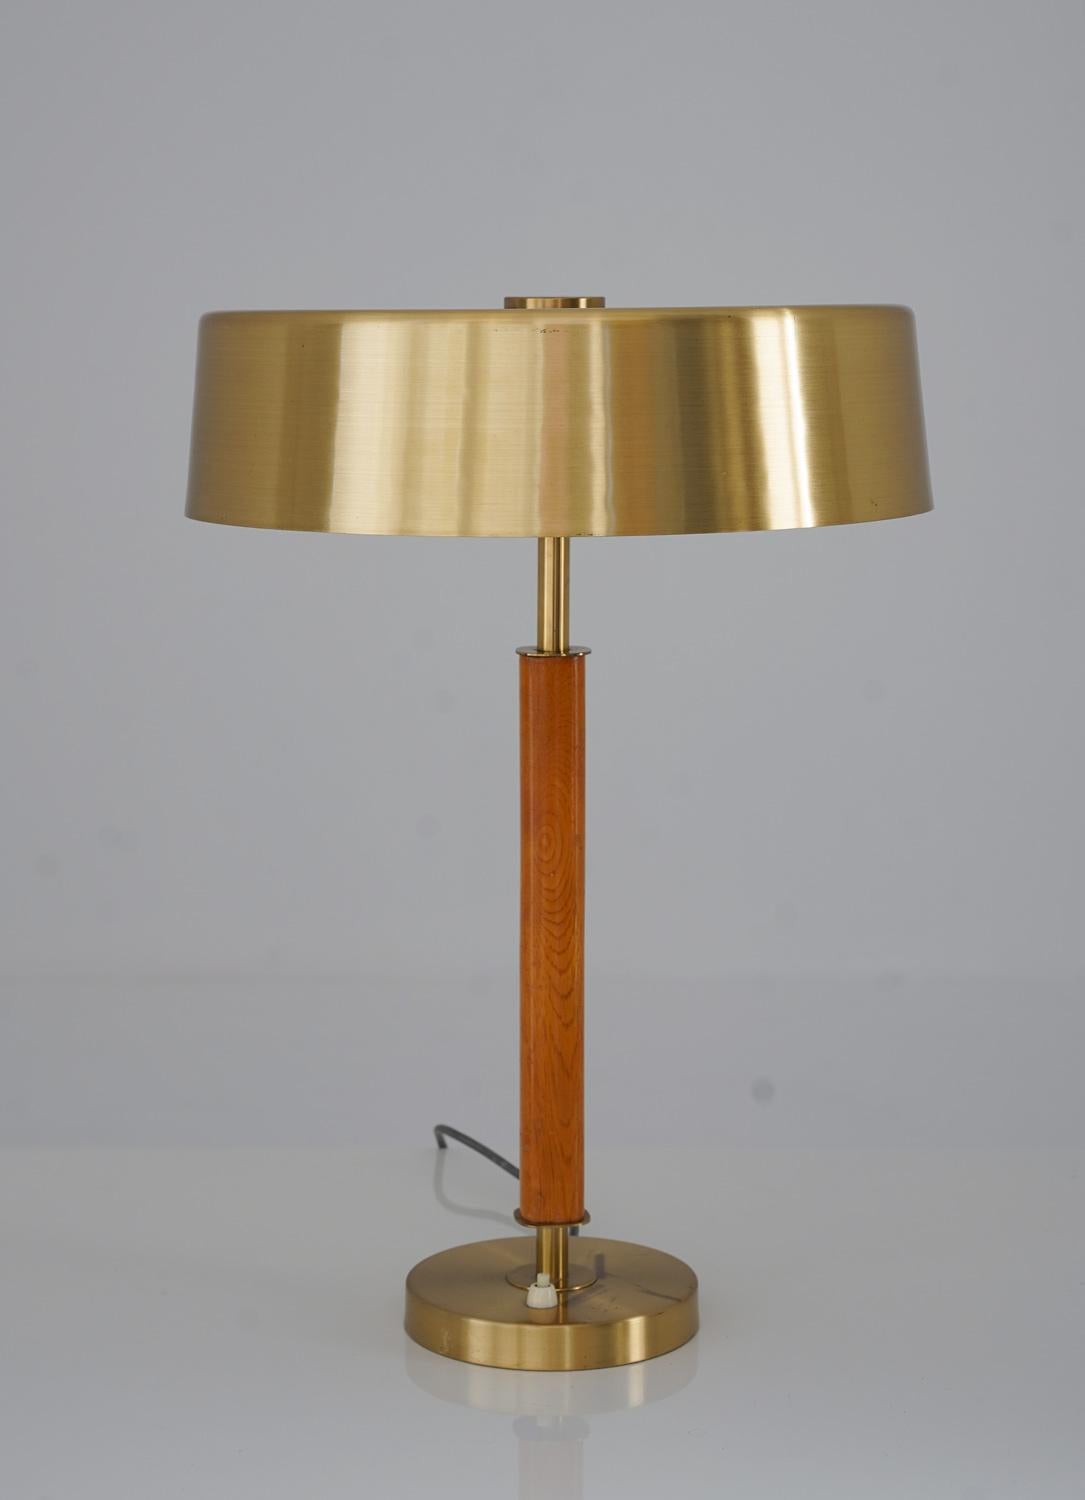 La lampe de table Boréns est une pièce étonnante du design scandinave. La lampe présente une tige en laiton brossé, entourée d'un abat-jour et reposant sur un pied dans le même matériau. La combinaison du laiton et du chêne crée une atmosphère